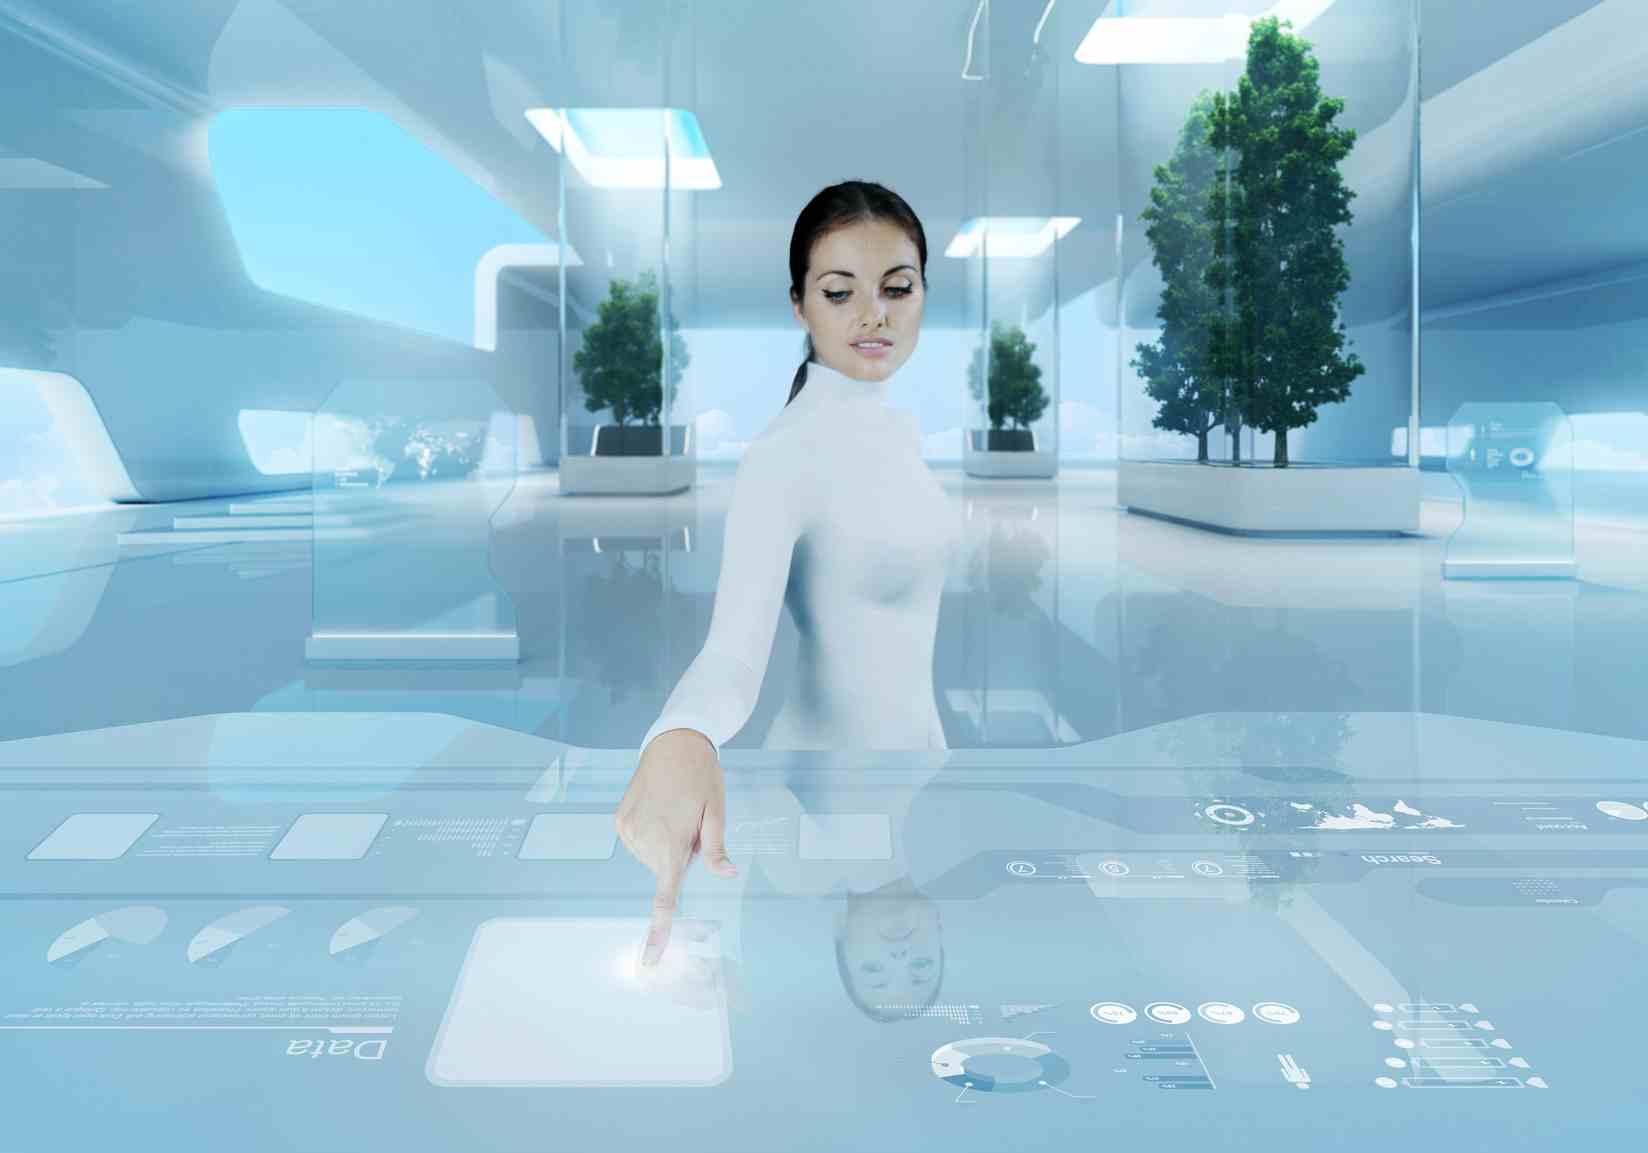 10 تقنيات مستقبلية قد تراها في أفلام الخيال العلمي تحولت إلى واقع